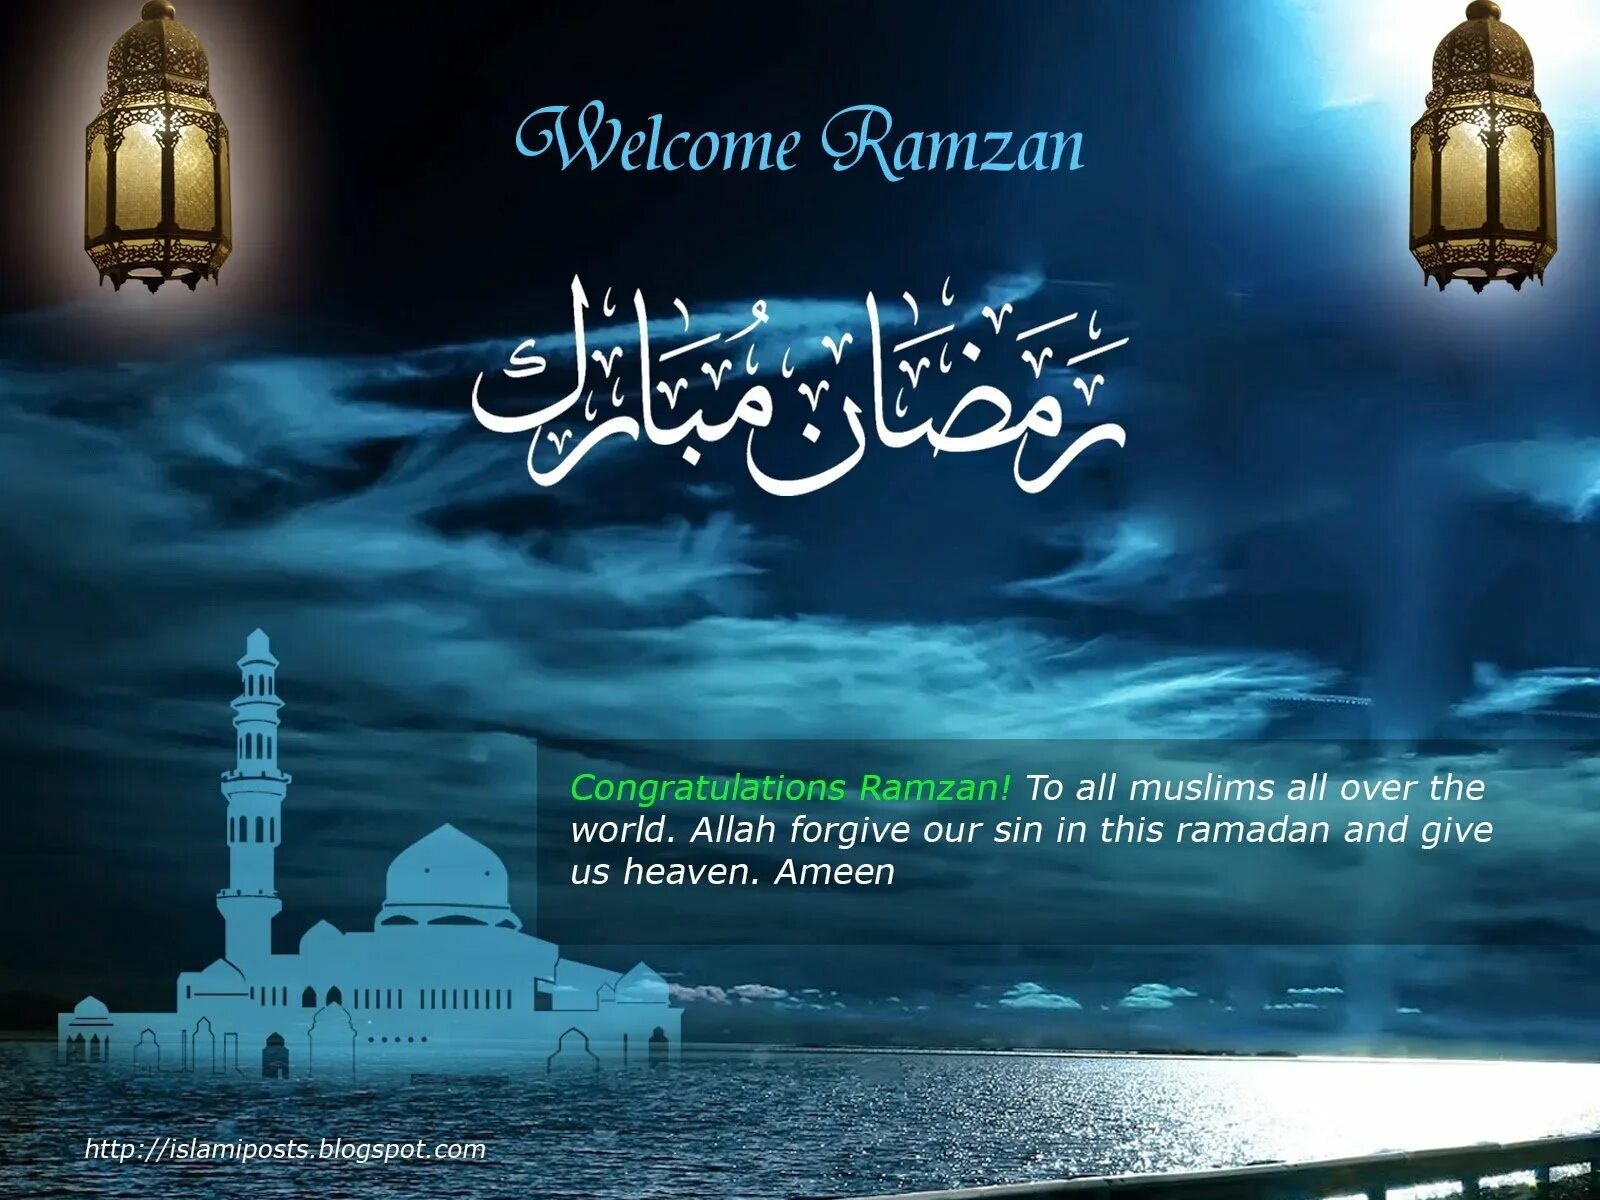 Поздравление с Рамаданом. Поздравлениес началомсаященного месяца Ромадан. С началом праздника Рамадан. Поздравление с НАЧАЛОМА Рамаданом.